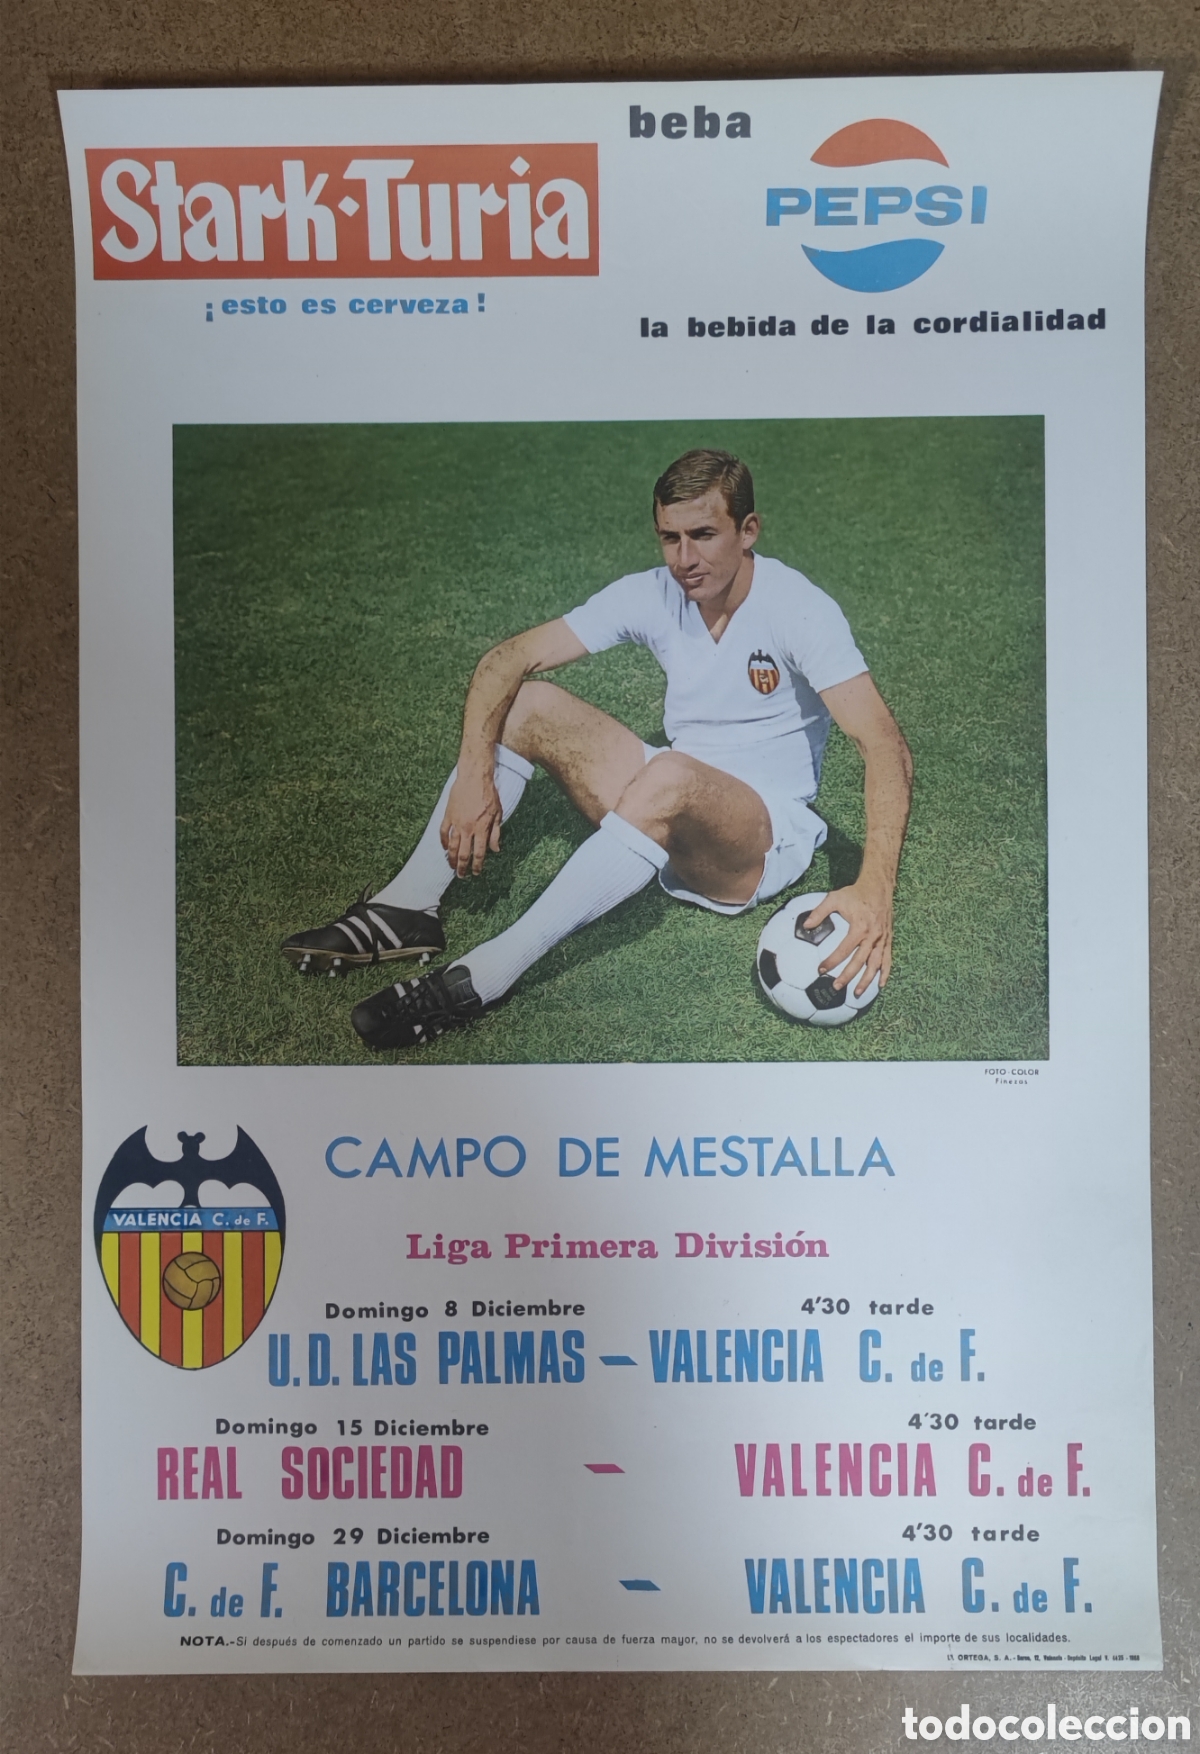 poster cartel original de los - Comprar Carteles de Fútbol Antiguos en todocoleccion - 379751259